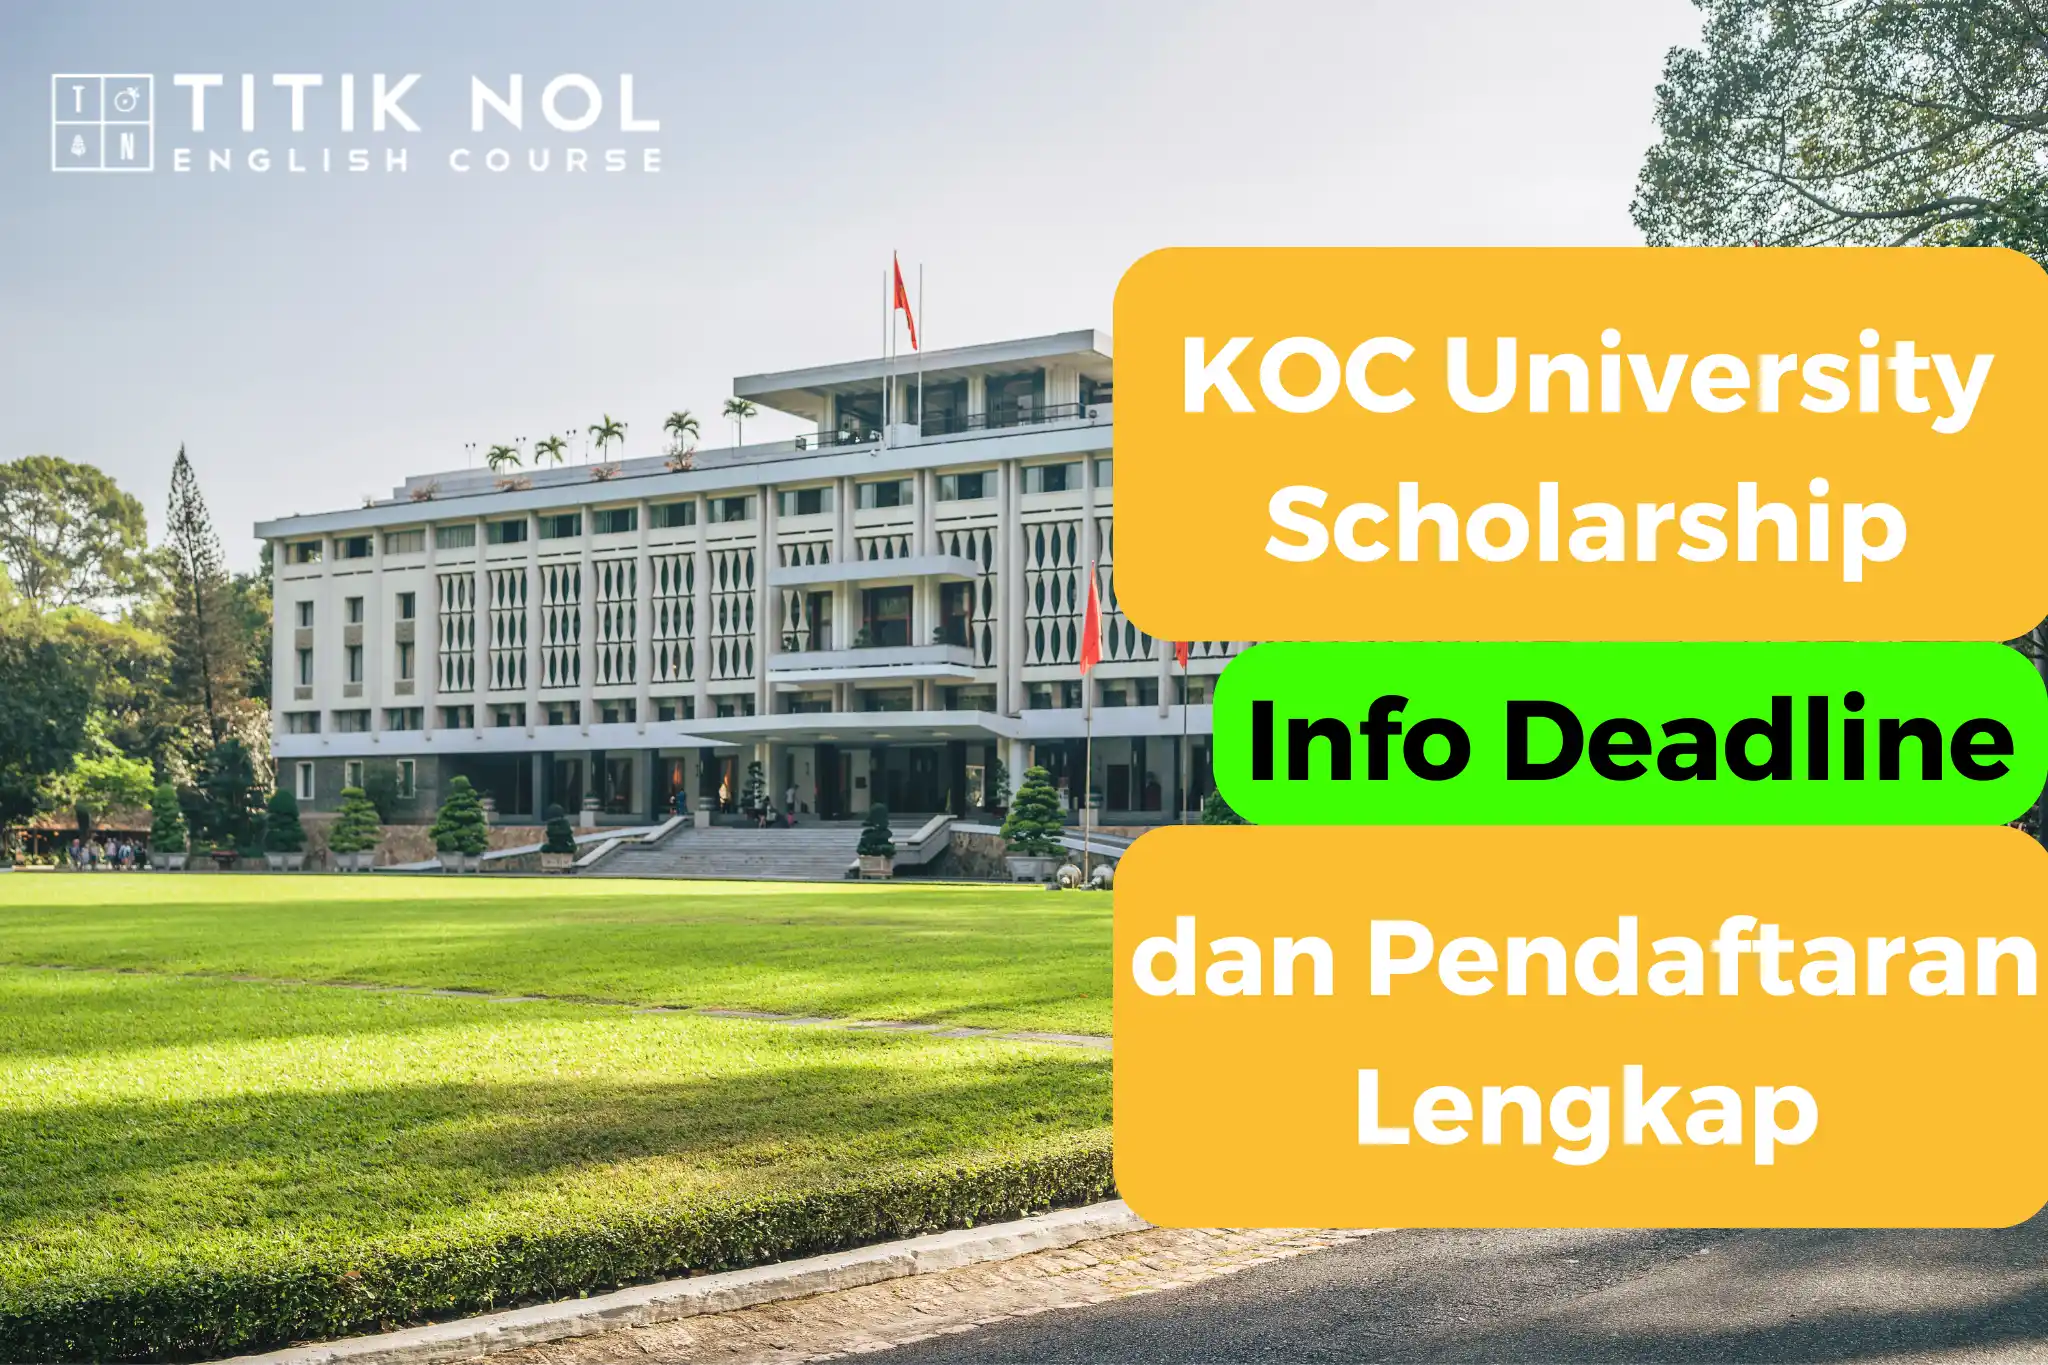 KOC university scholarship